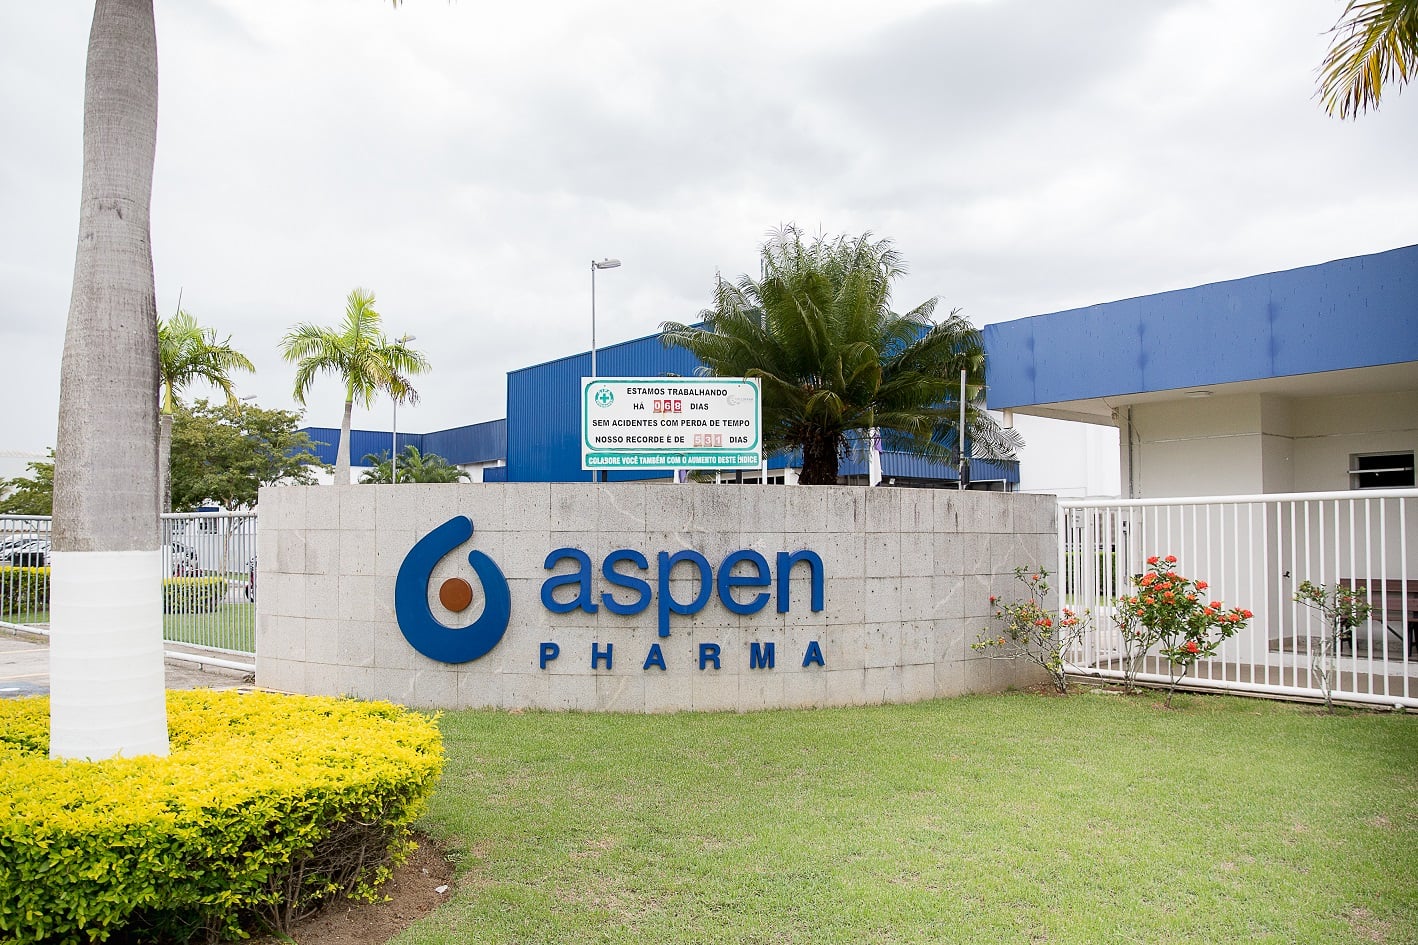 Aspen Pharma foca na qualidade de vida dos pacientes e profissioanais